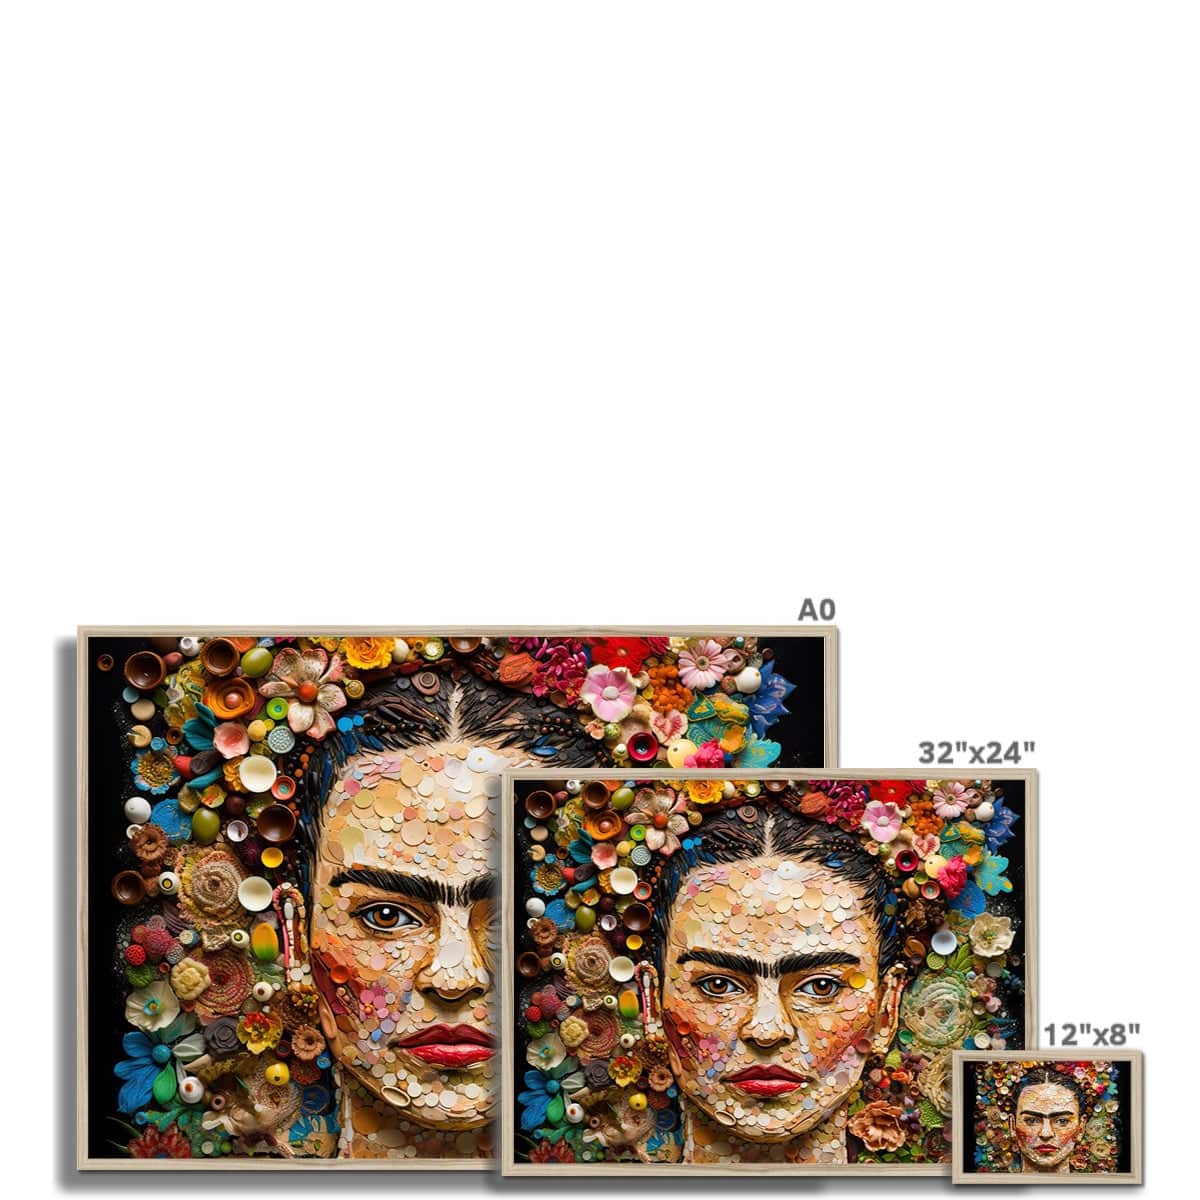 Frida Kahlo Portrait Framed Print - Pixel Gallery